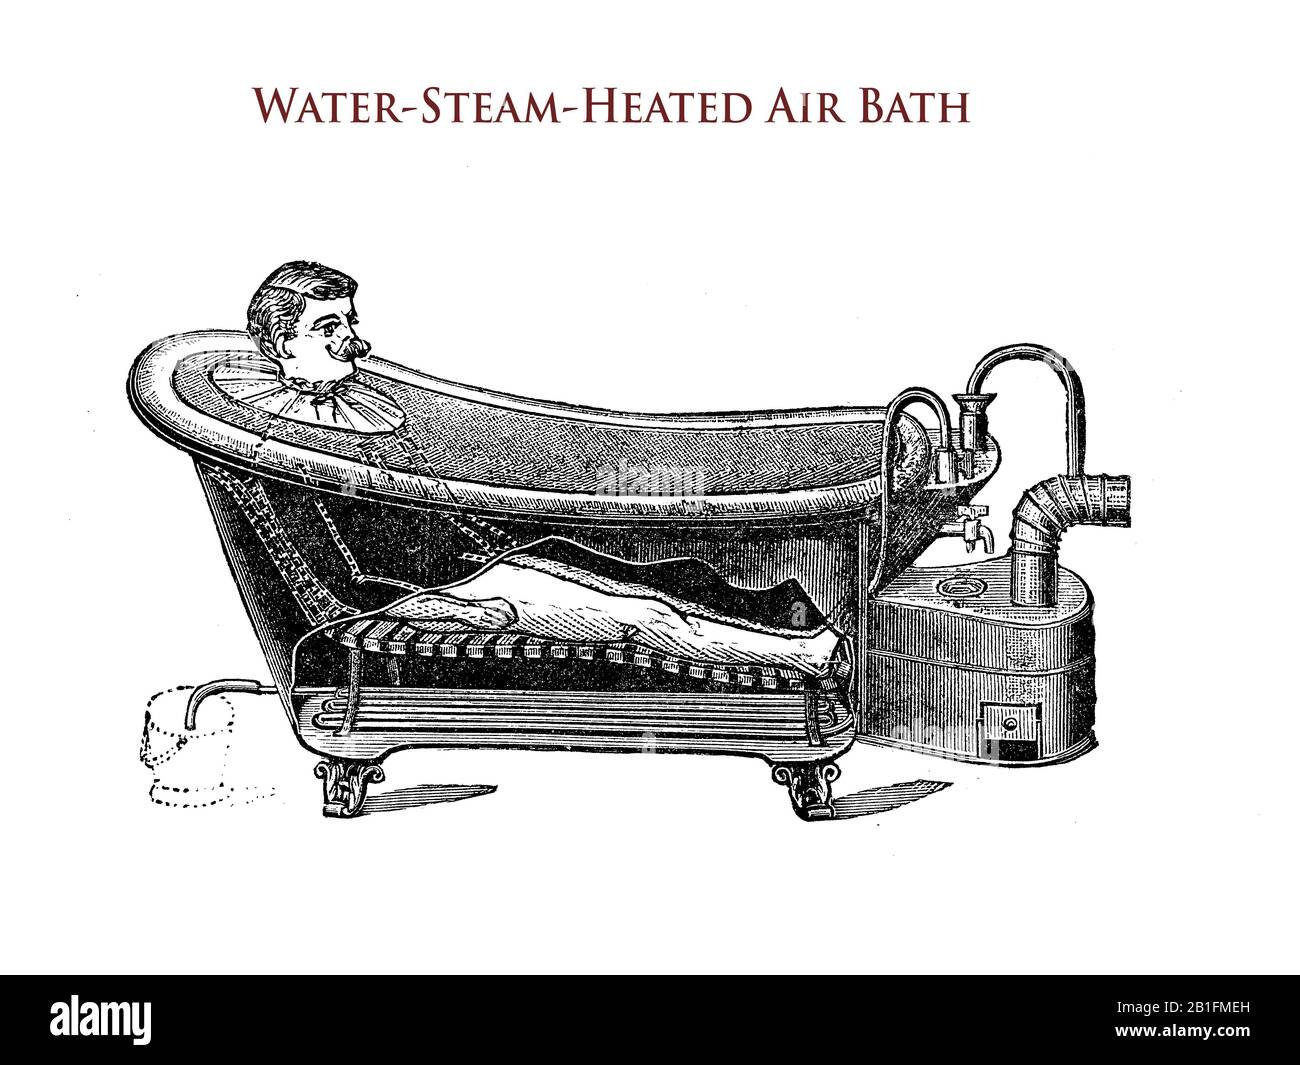 Sanità e medicina: Bagno d'aria riscaldato con vapore acqueo in una vasca chiusa con aria calda circolante Foto Stock